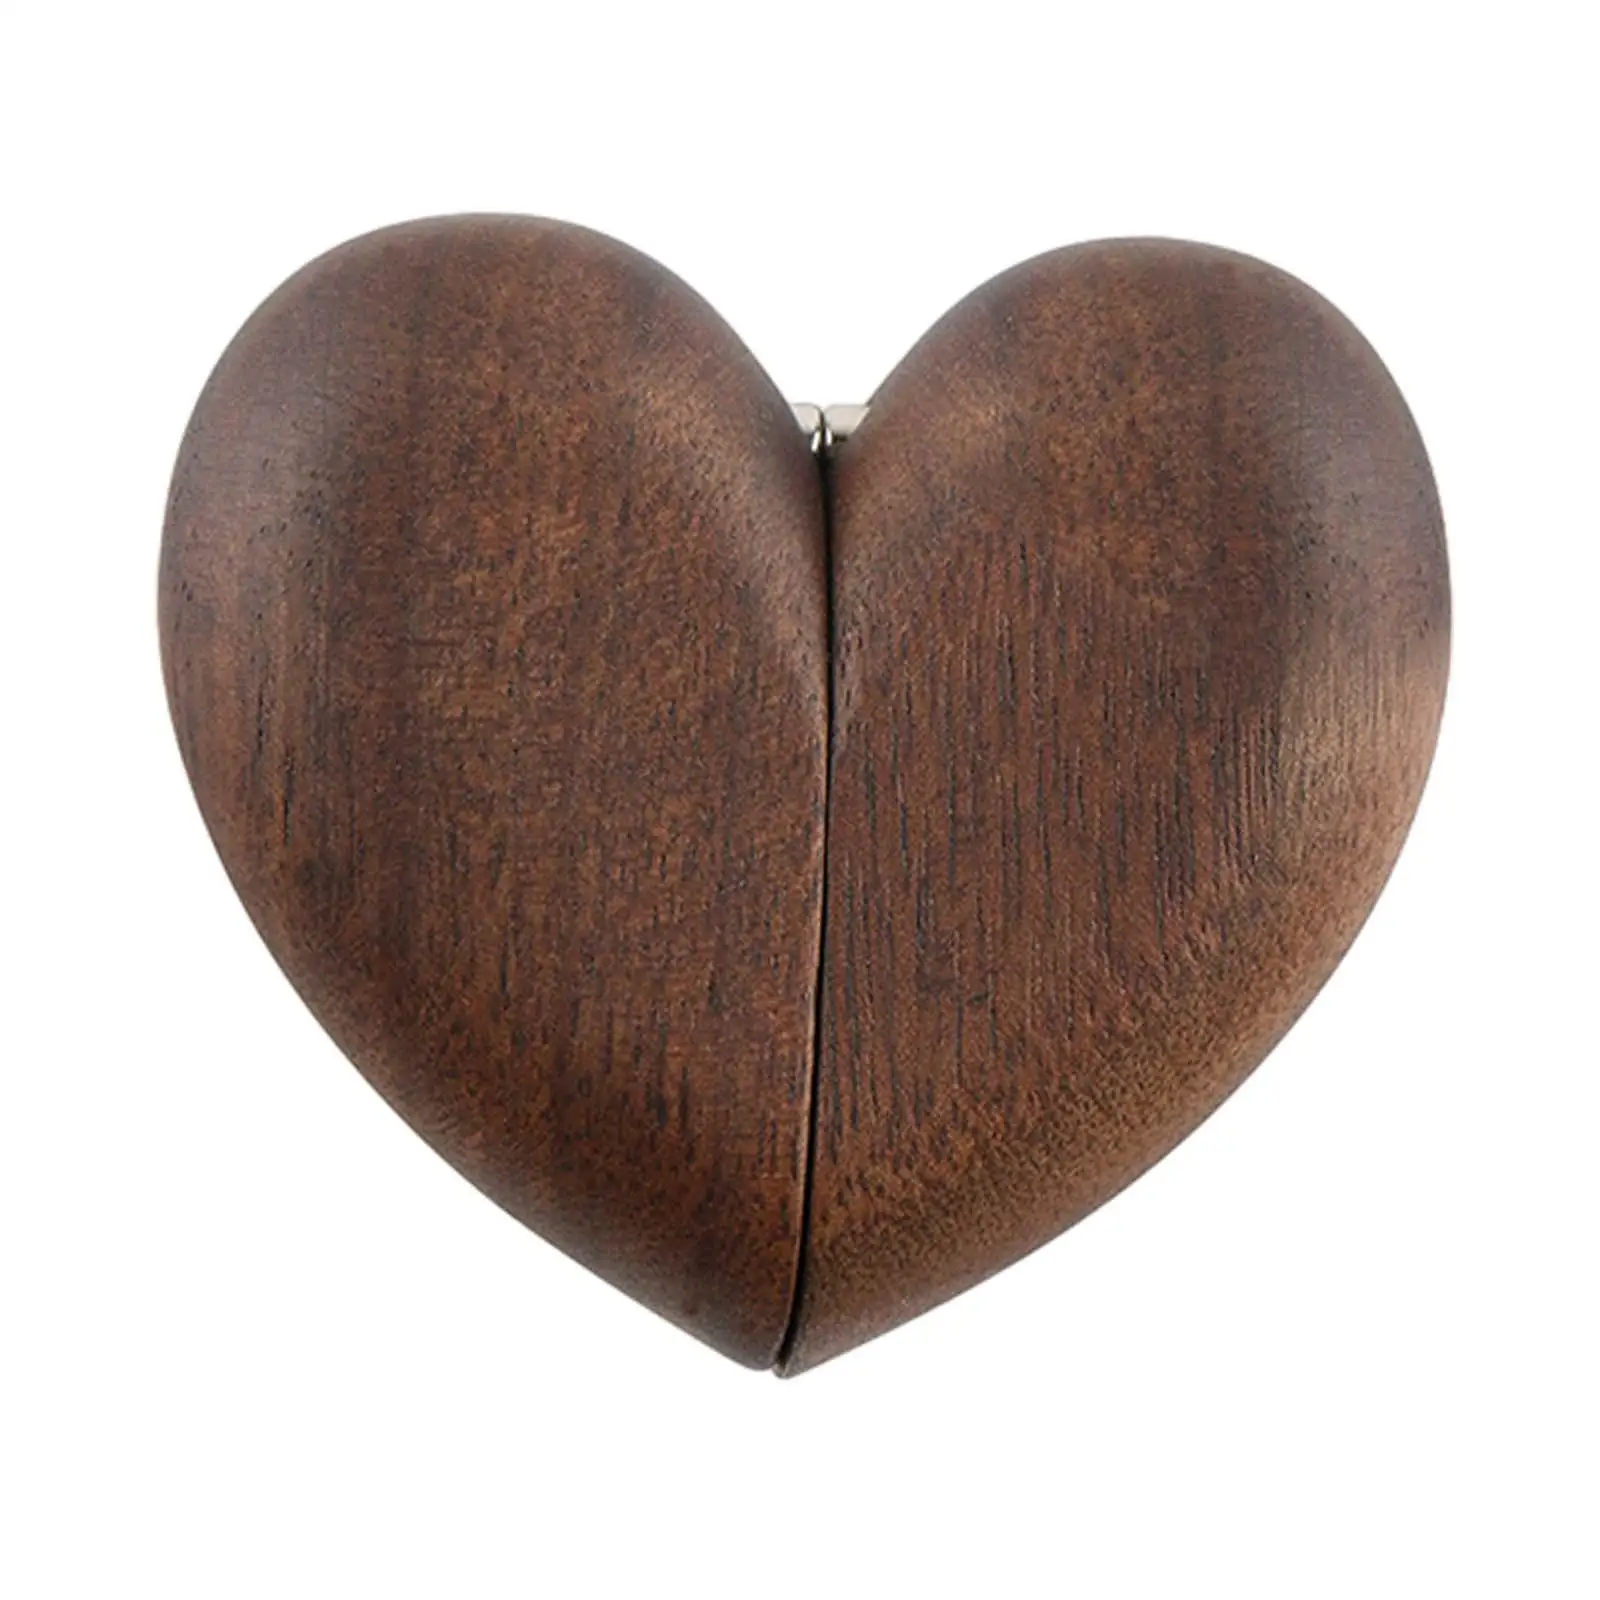 

Деревянная коробка для колец в форме сердца для свадьбы, юбилея, дня рождения